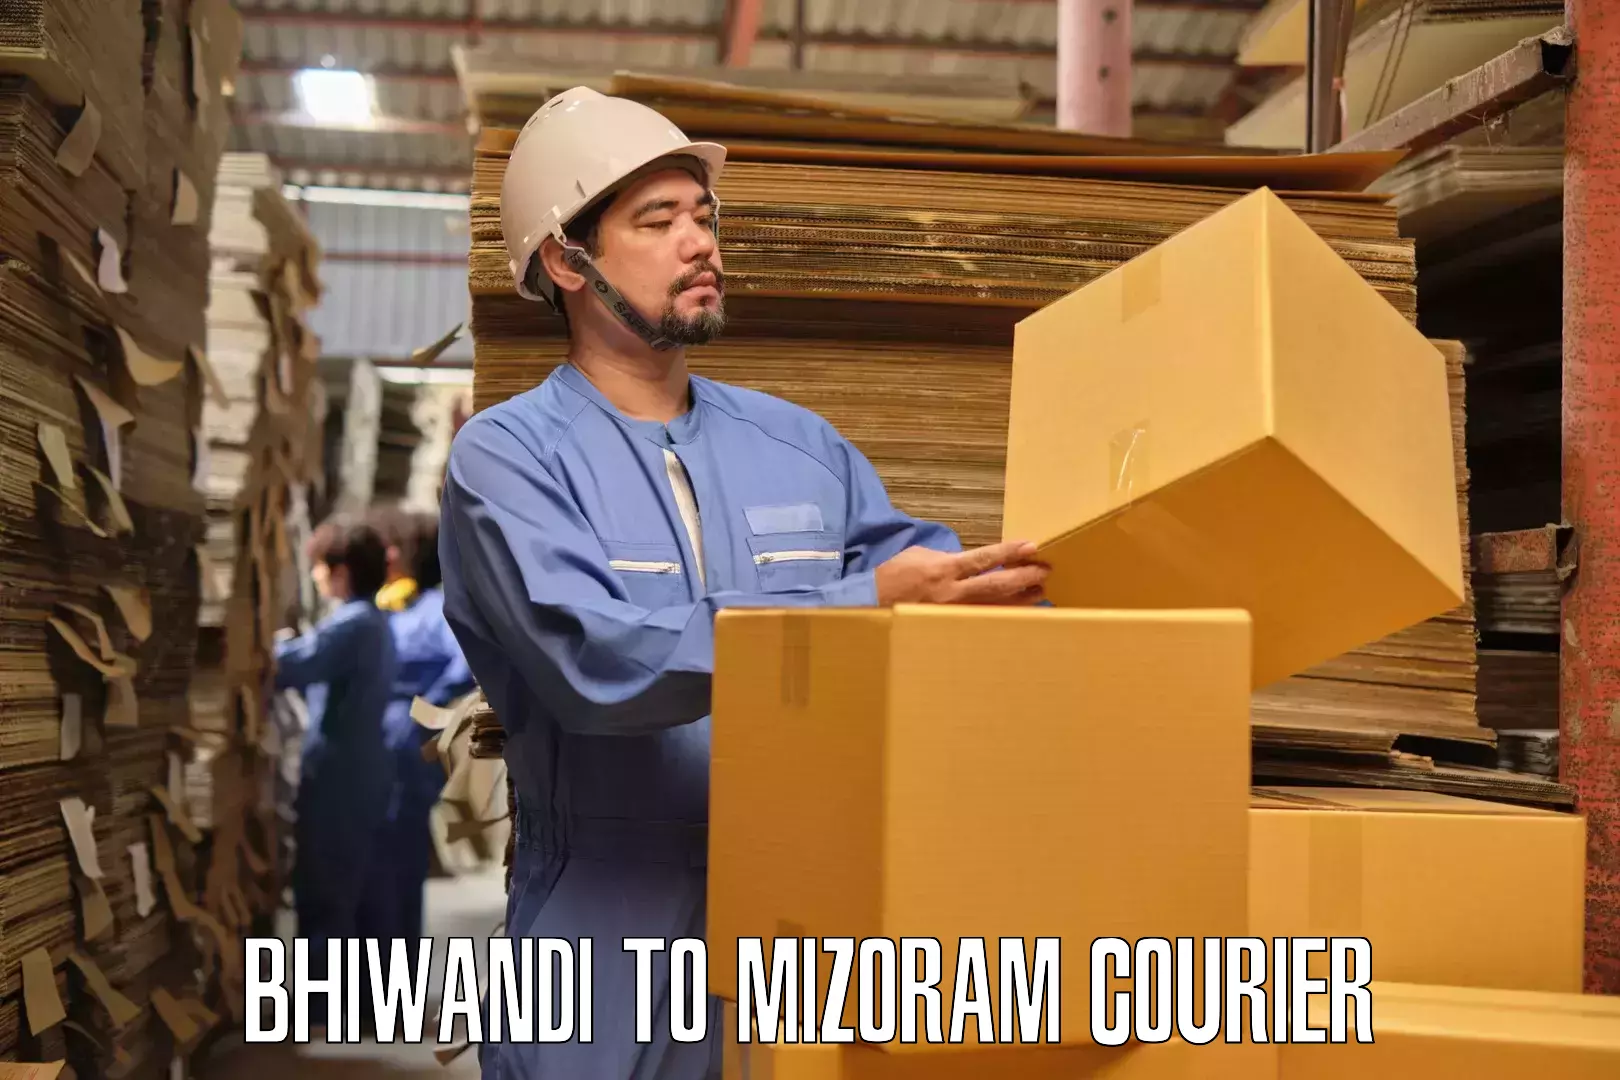 Furniture transport company Bhiwandi to Khawzawl